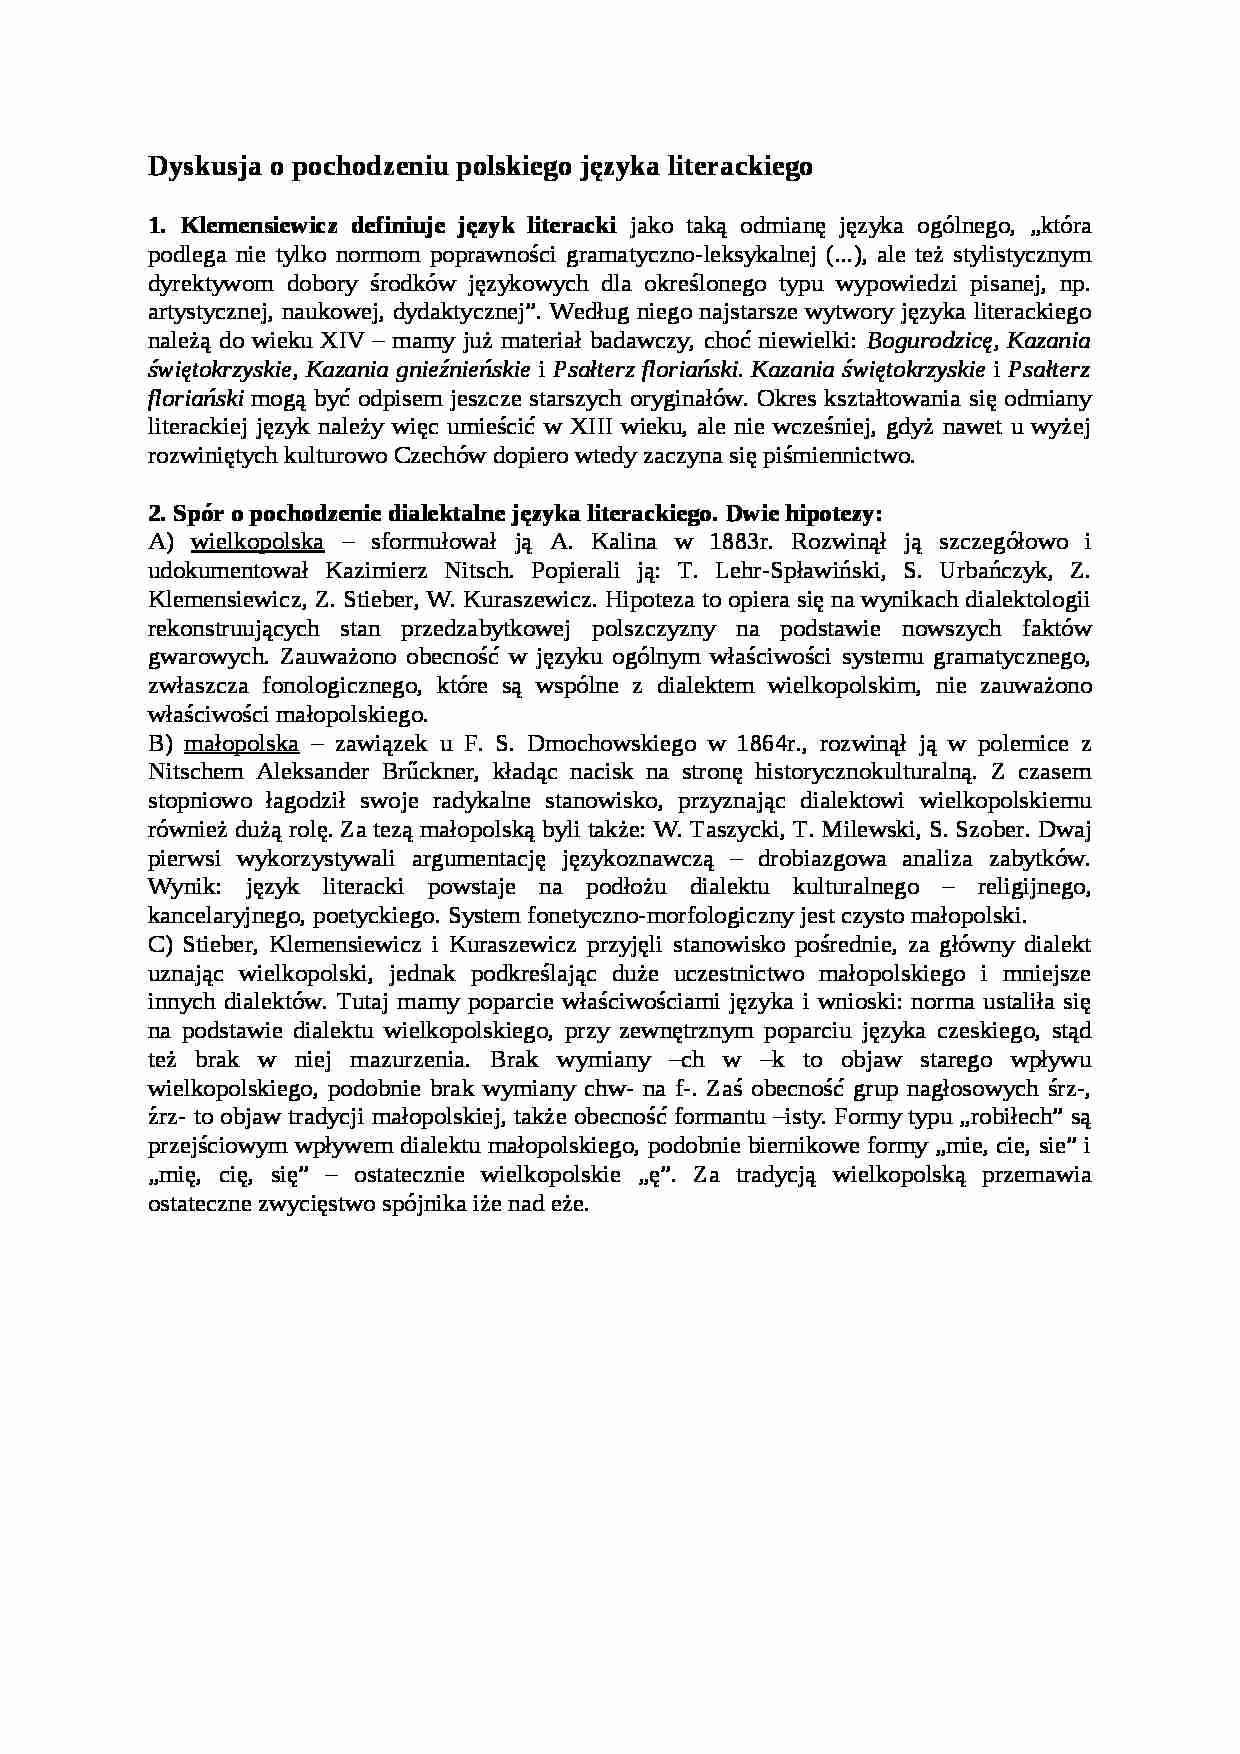 Dyskusja o pochodzeniu polskiego języka literackiego-opracowanie - strona 1